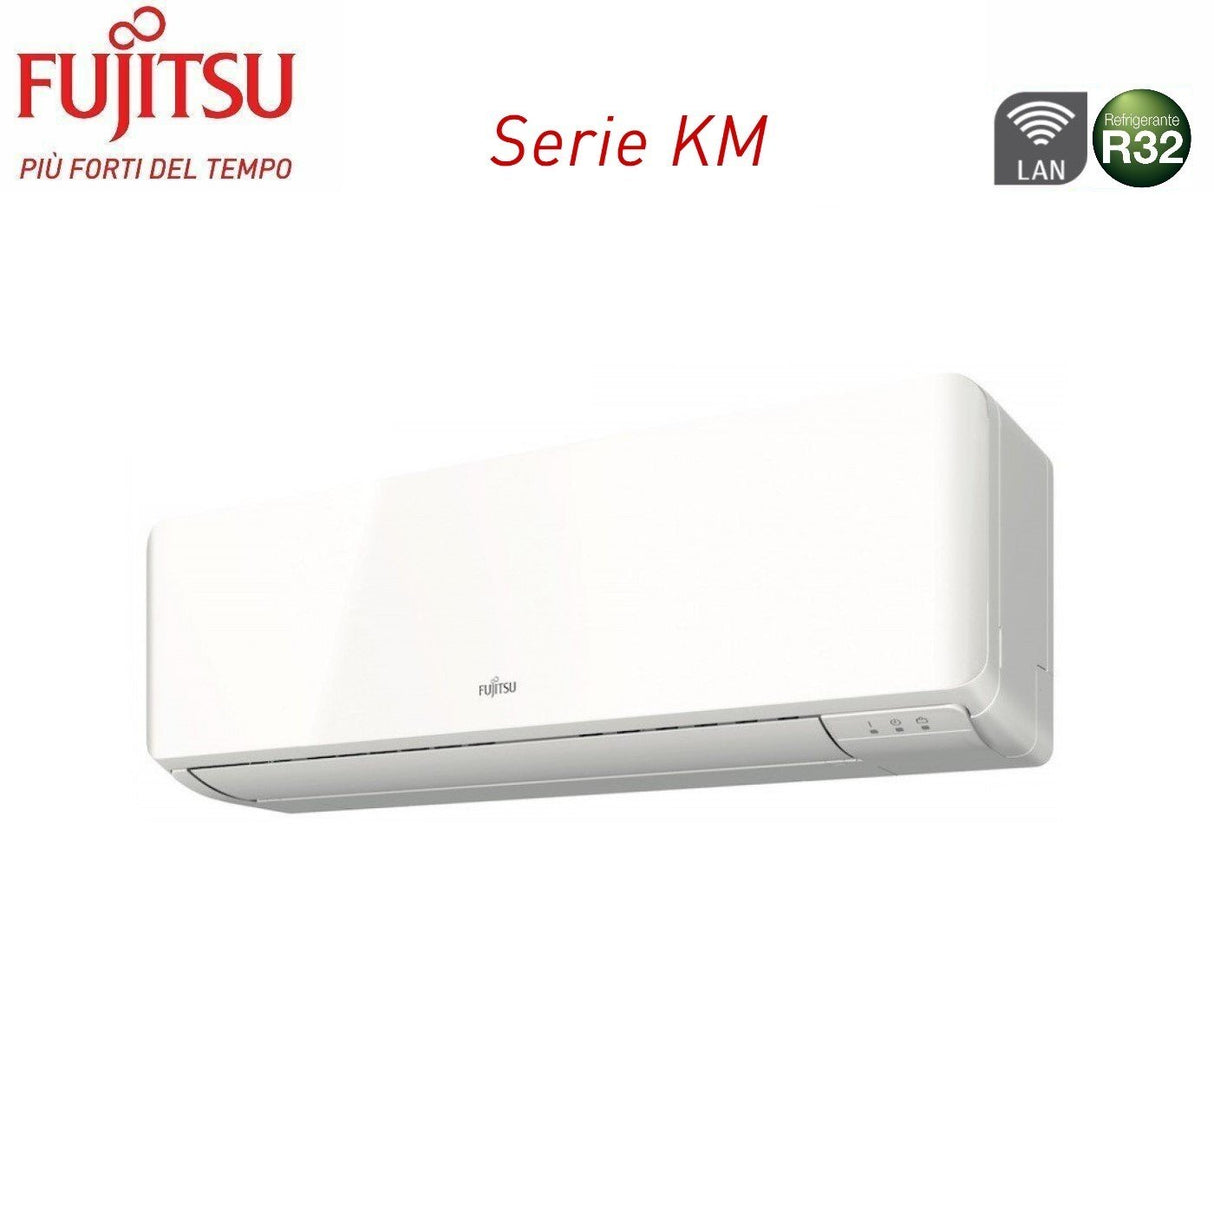 immagine-3-fujitsu-climatizzatore-condizionatore-fujitsu-dual-split-inverter-serie-km-912-con-aoyg18kbta2-r-32-wi-fi-integrato-900012000